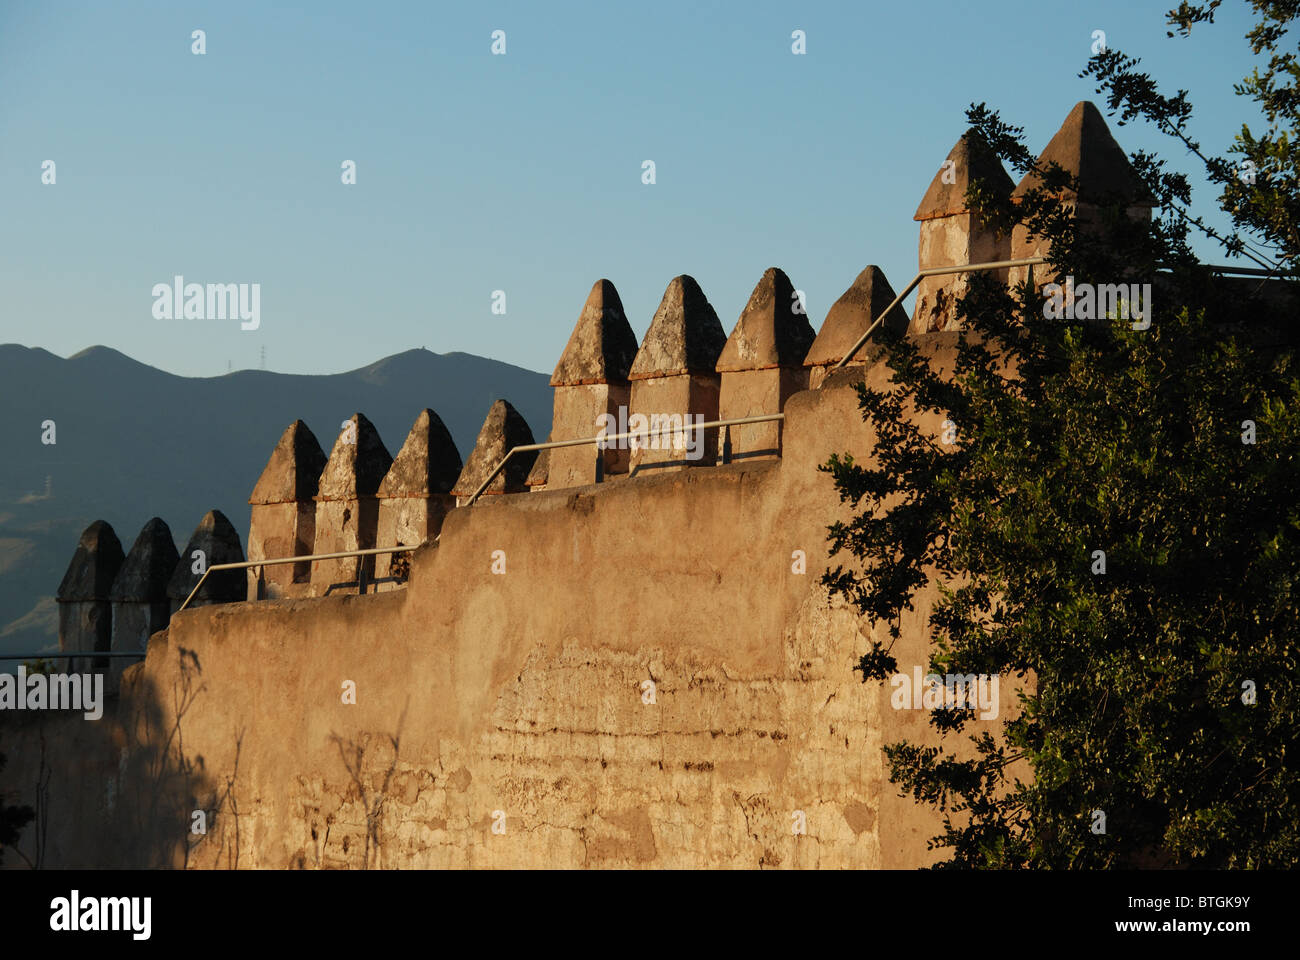 Castello merlature, castello di Gibralfaro, Malaga, Costa del Sol, provincia di Malaga, Andalusia, Spagna, Europa occidentale. Foto Stock